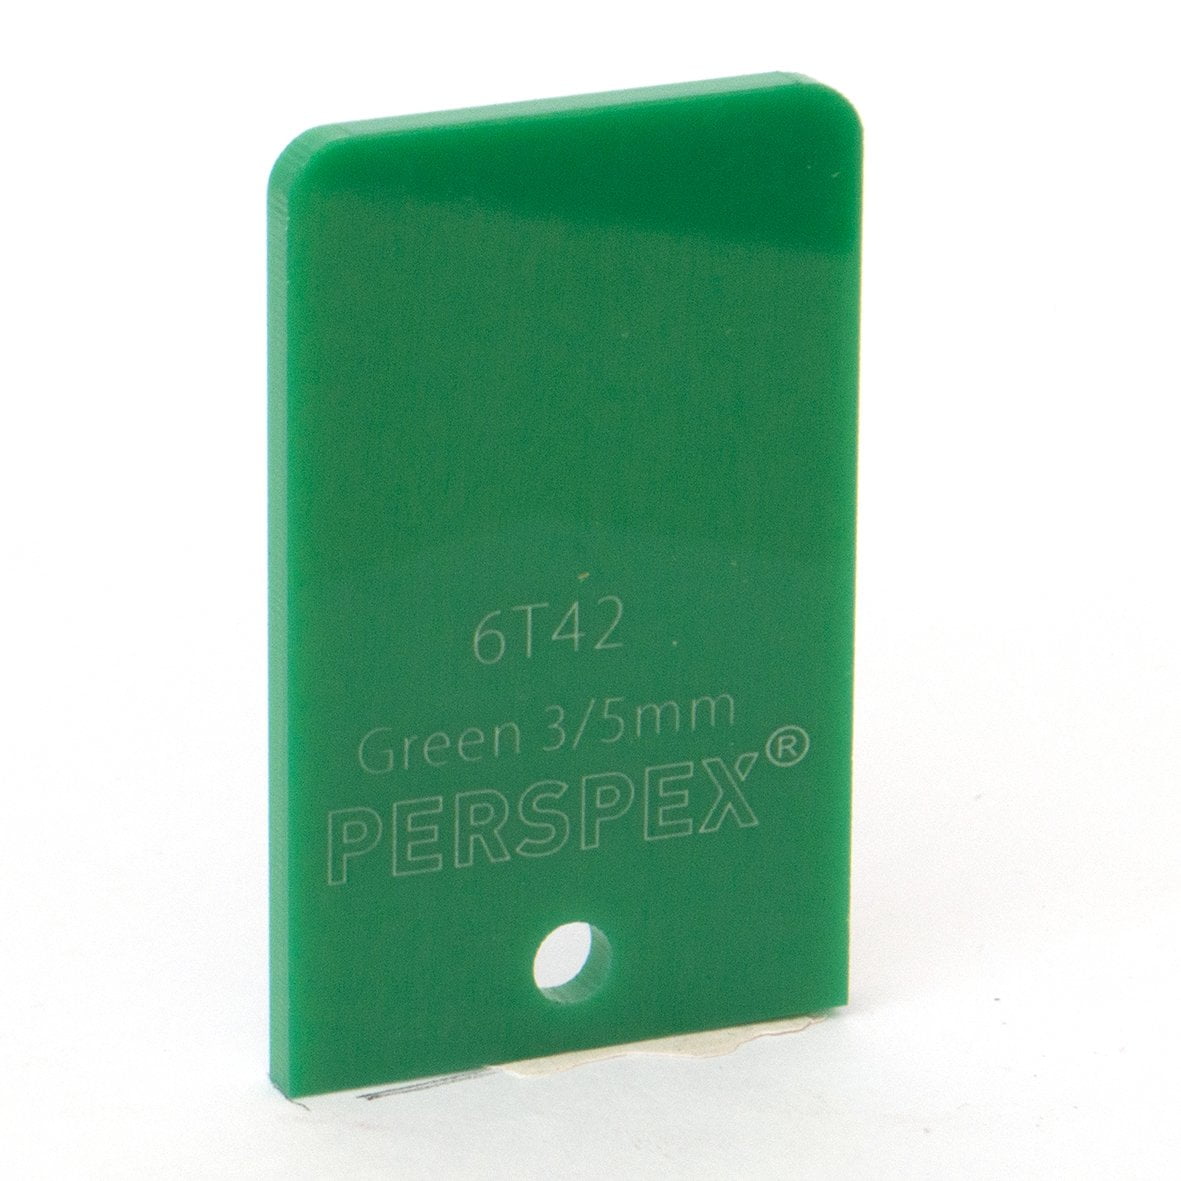 5mm Standard Green 6T42, 1000x600mm